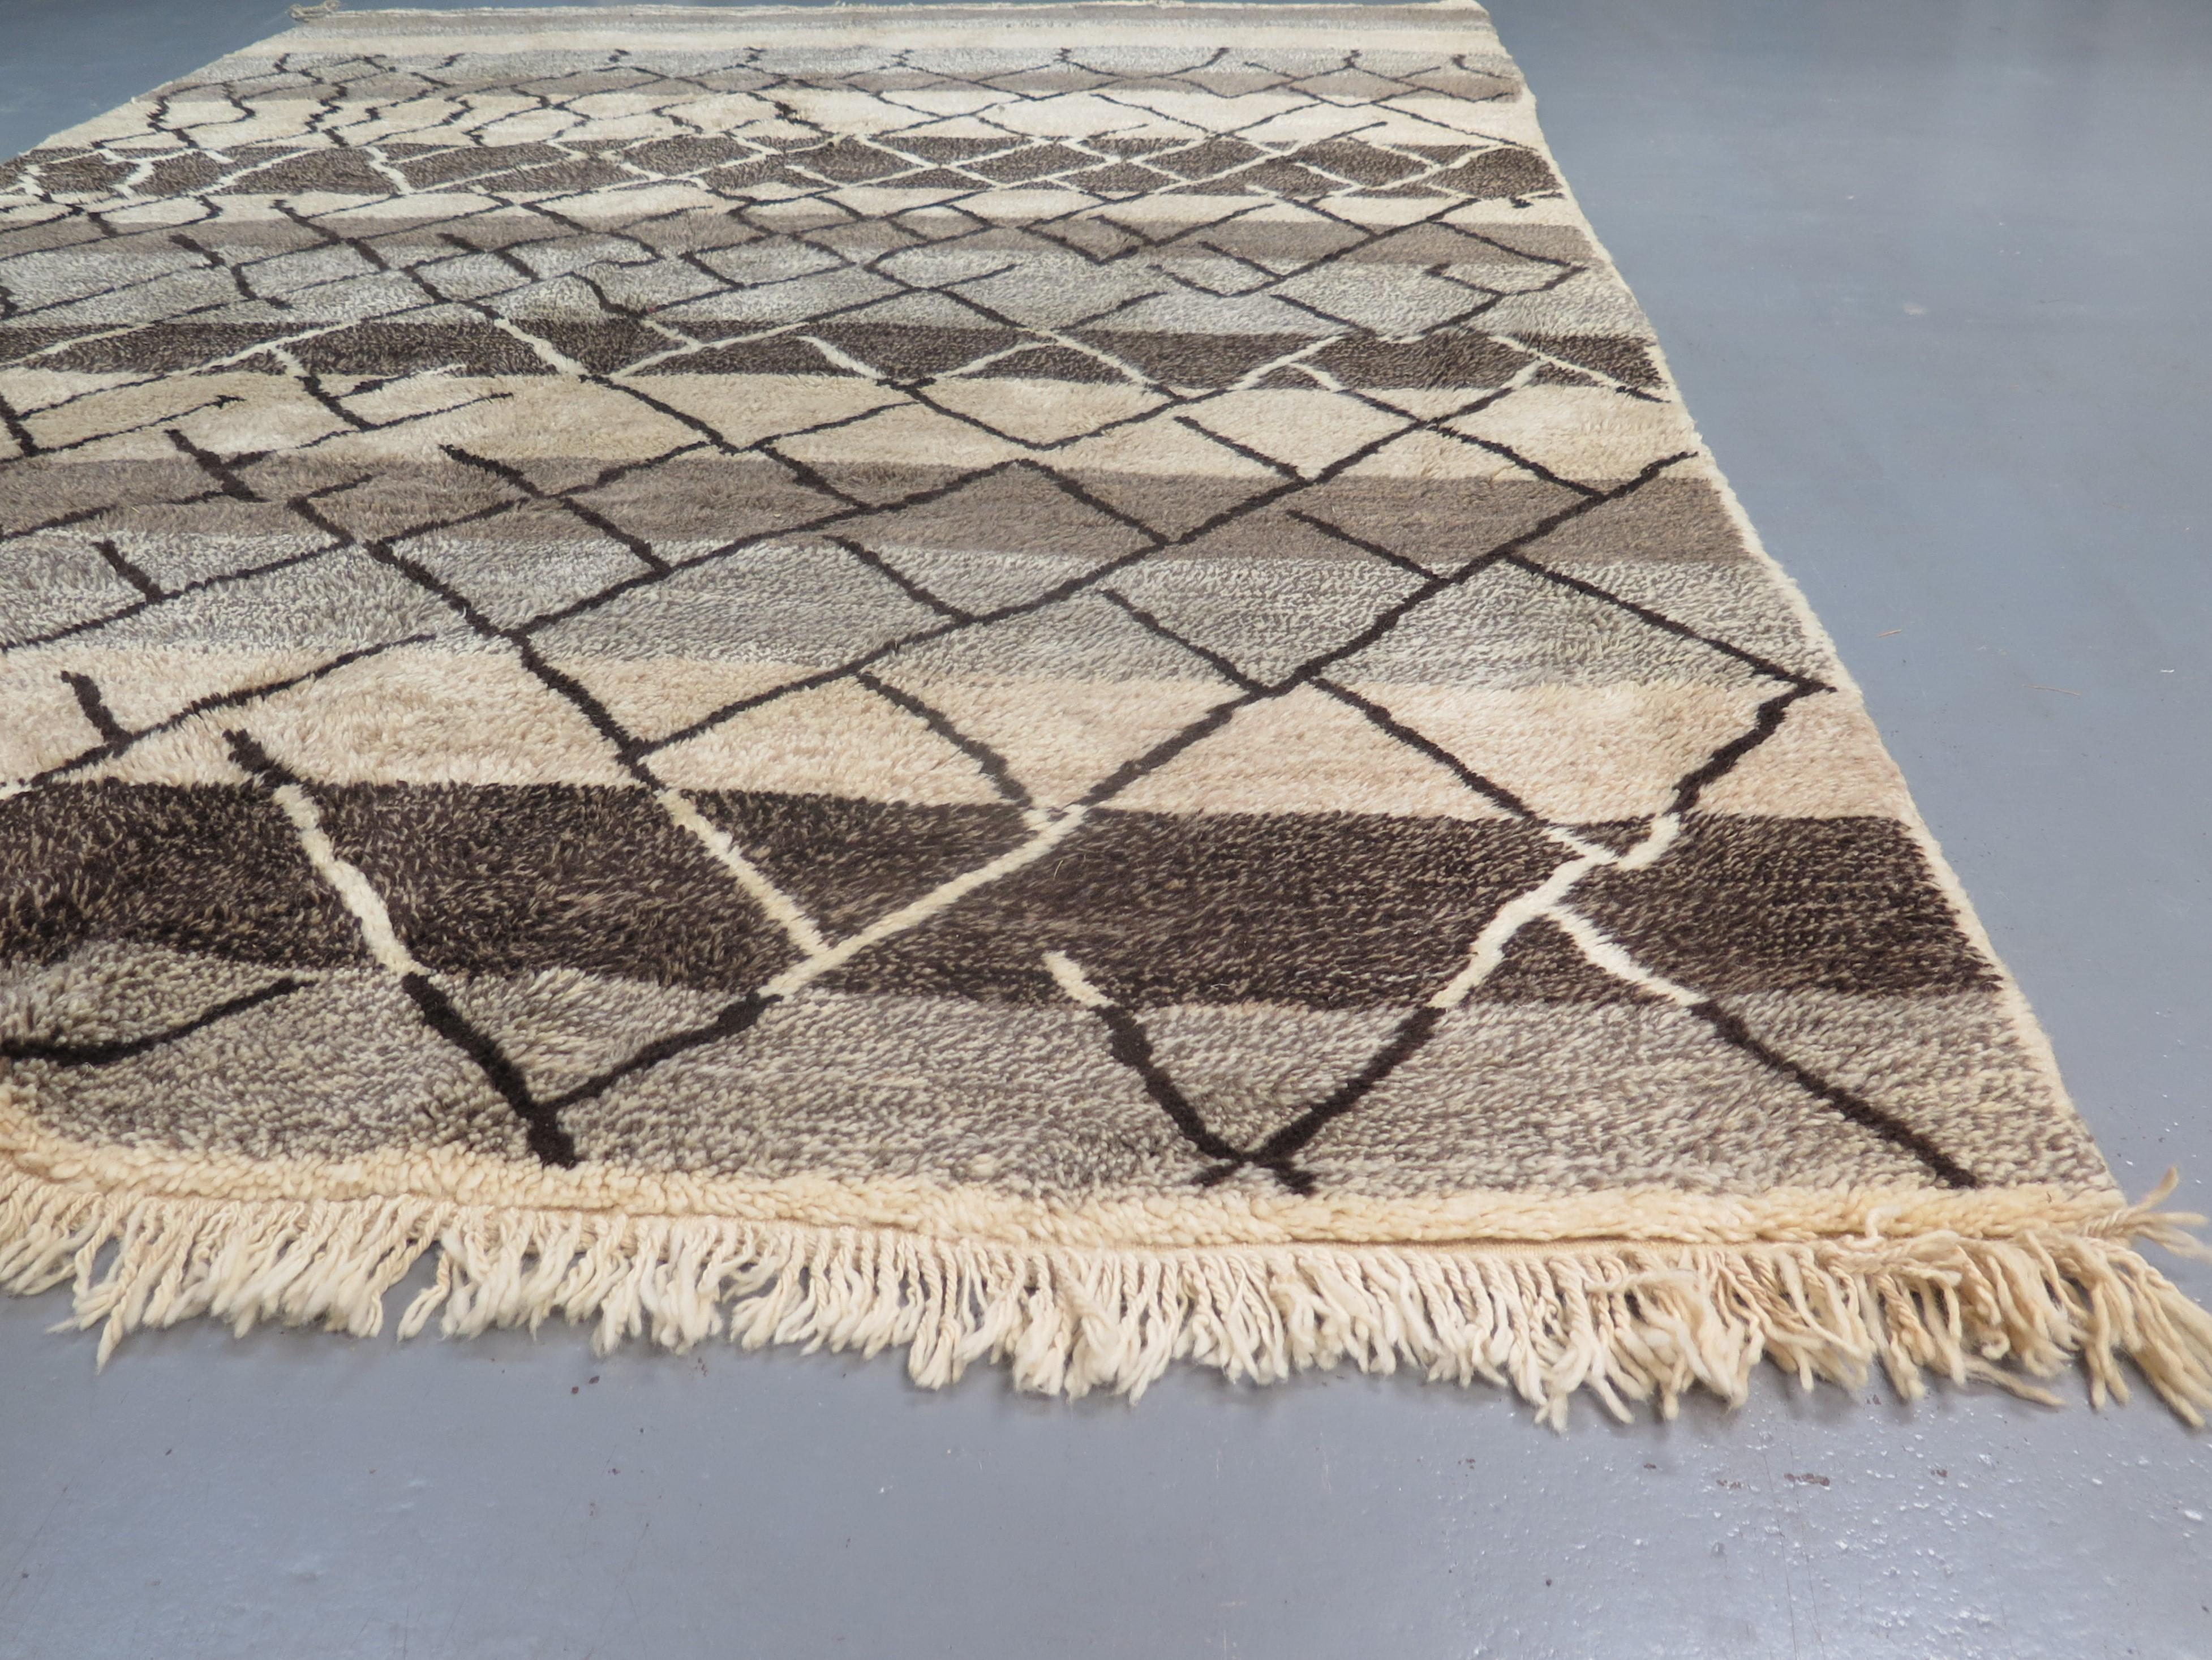 Ein zeitgenössischer marokkanischer Teppich, handgeknüpft aus hochwertiger Wolle, inspiriert von den begehrten Beni Ourain-Knüpfungen aus der Jahrhundertmitte, die von Designern wie Alvar Aalto und Le Corbusier bekannt gemacht wurden.

Der